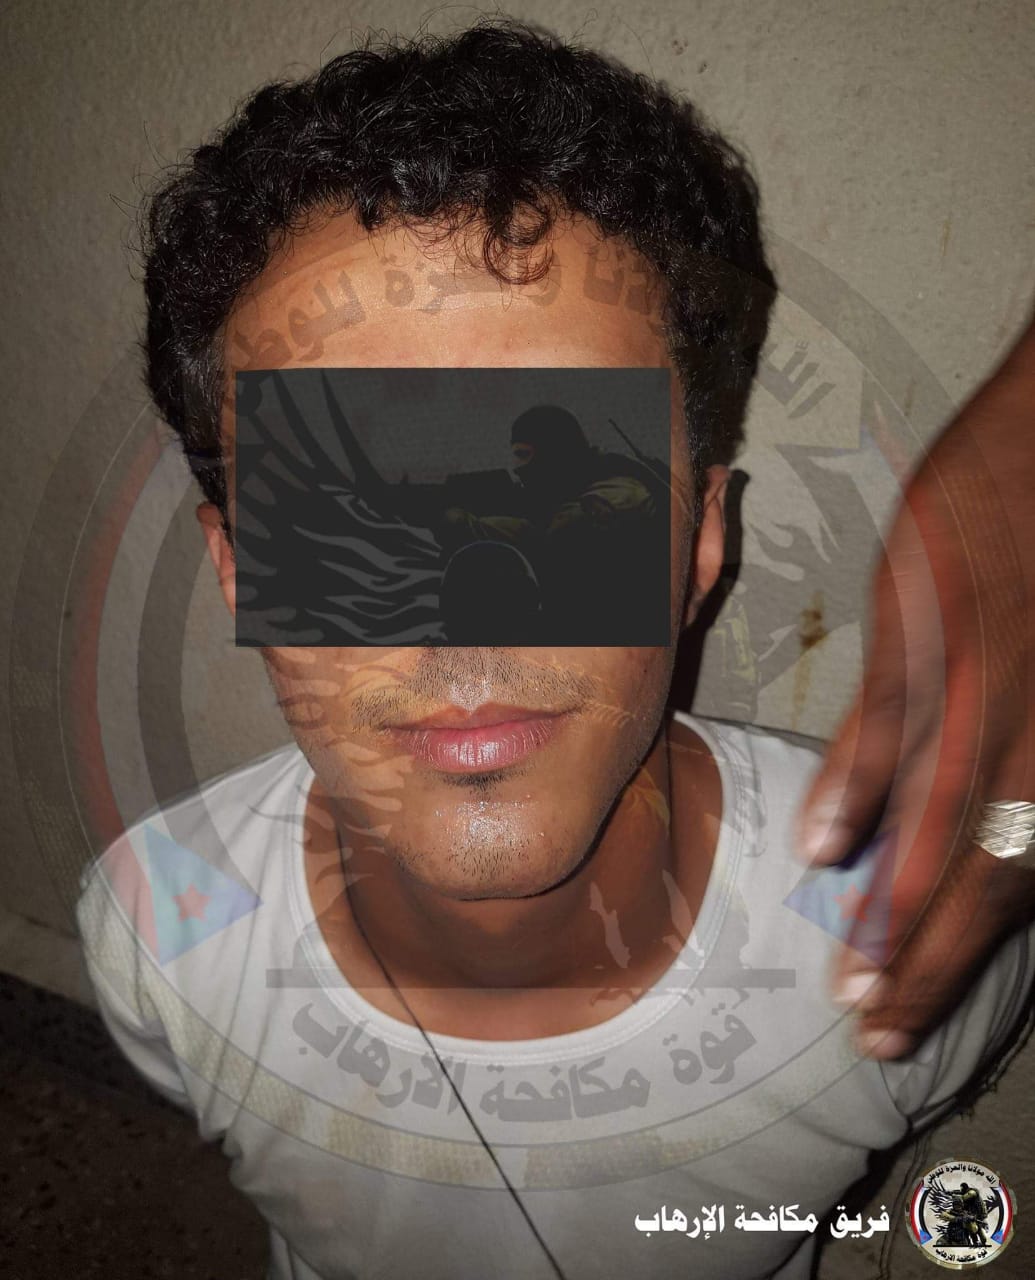 عاجل فريق مكافحة الإرهاب : القبض على أحد عناصر تنظيم داعش في عدن .